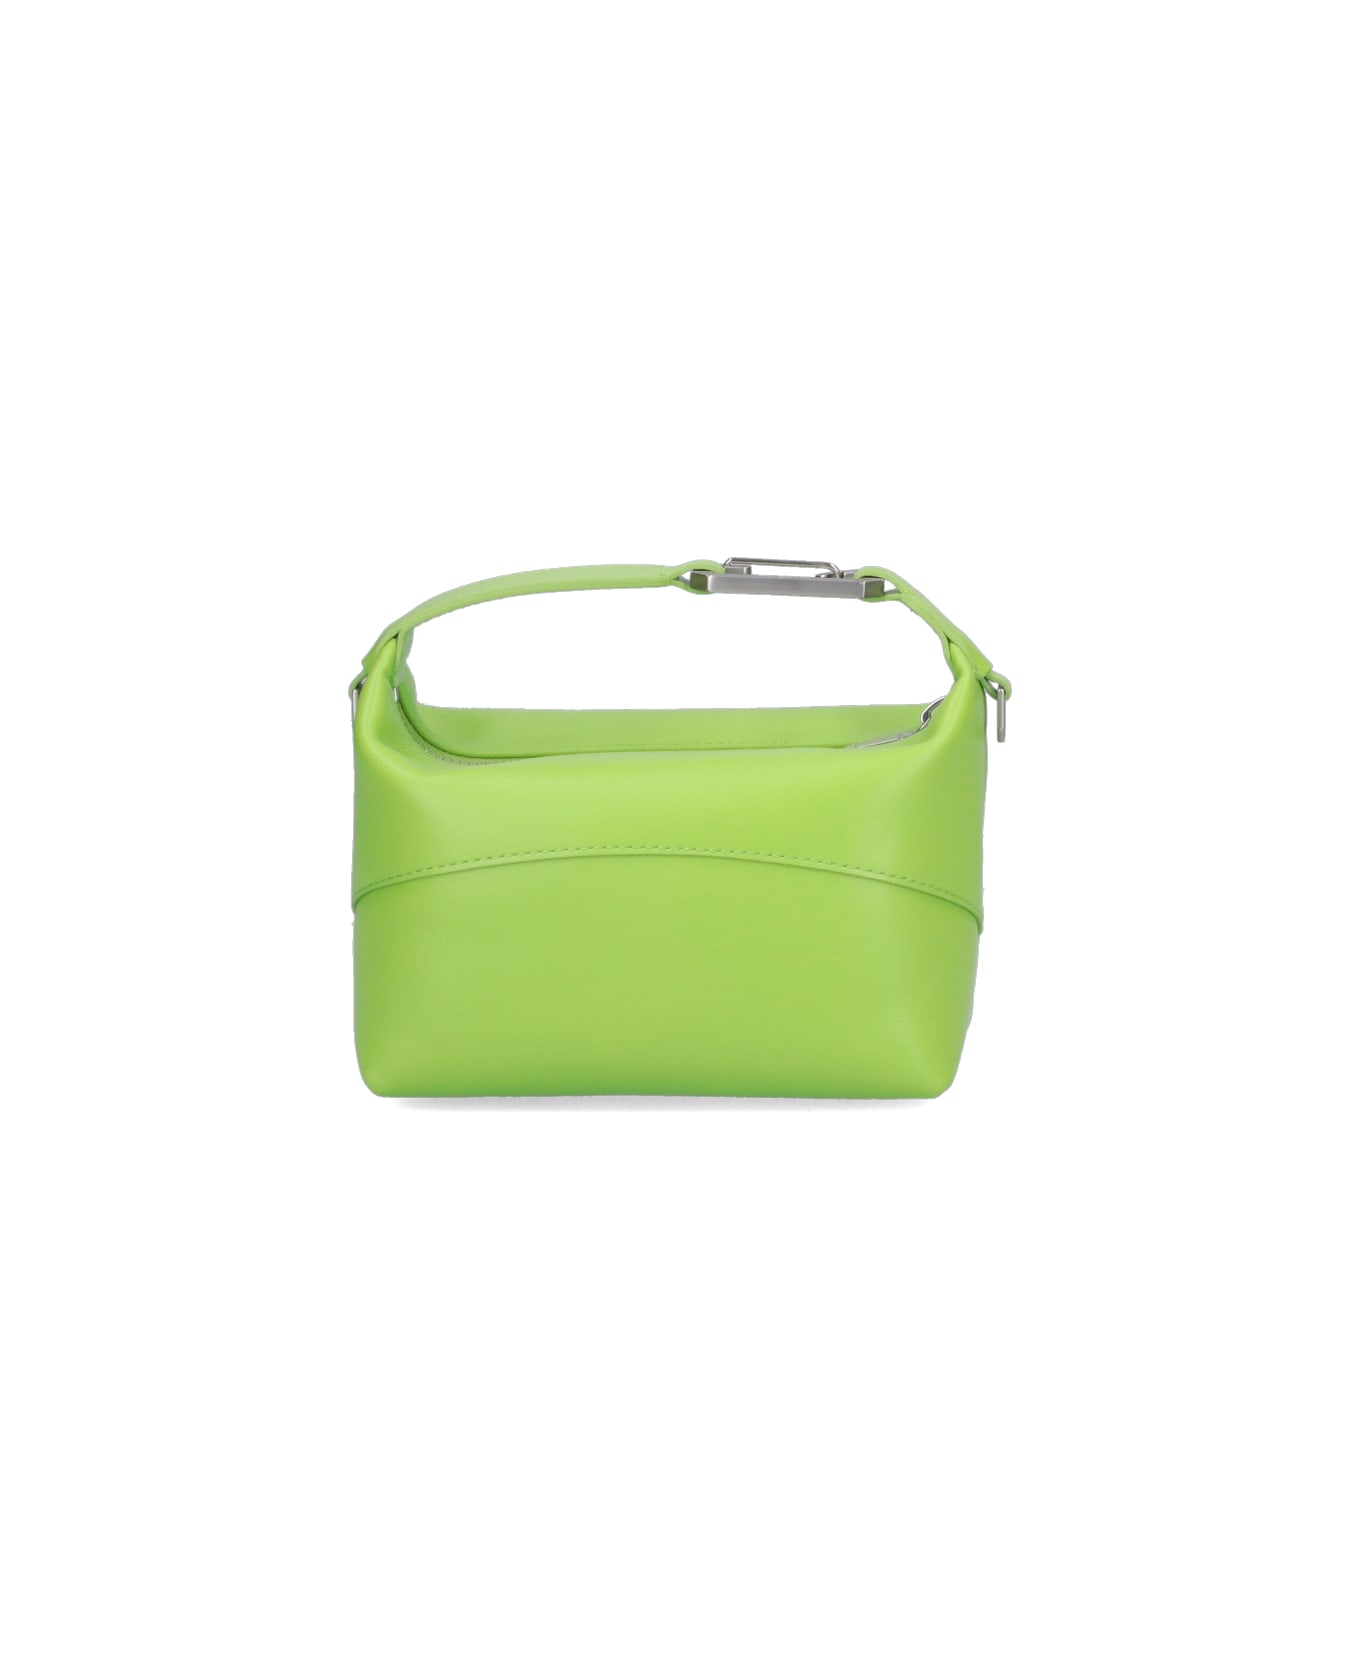 EÉRA 'moon' Handbag - Green ショルダーバッグ